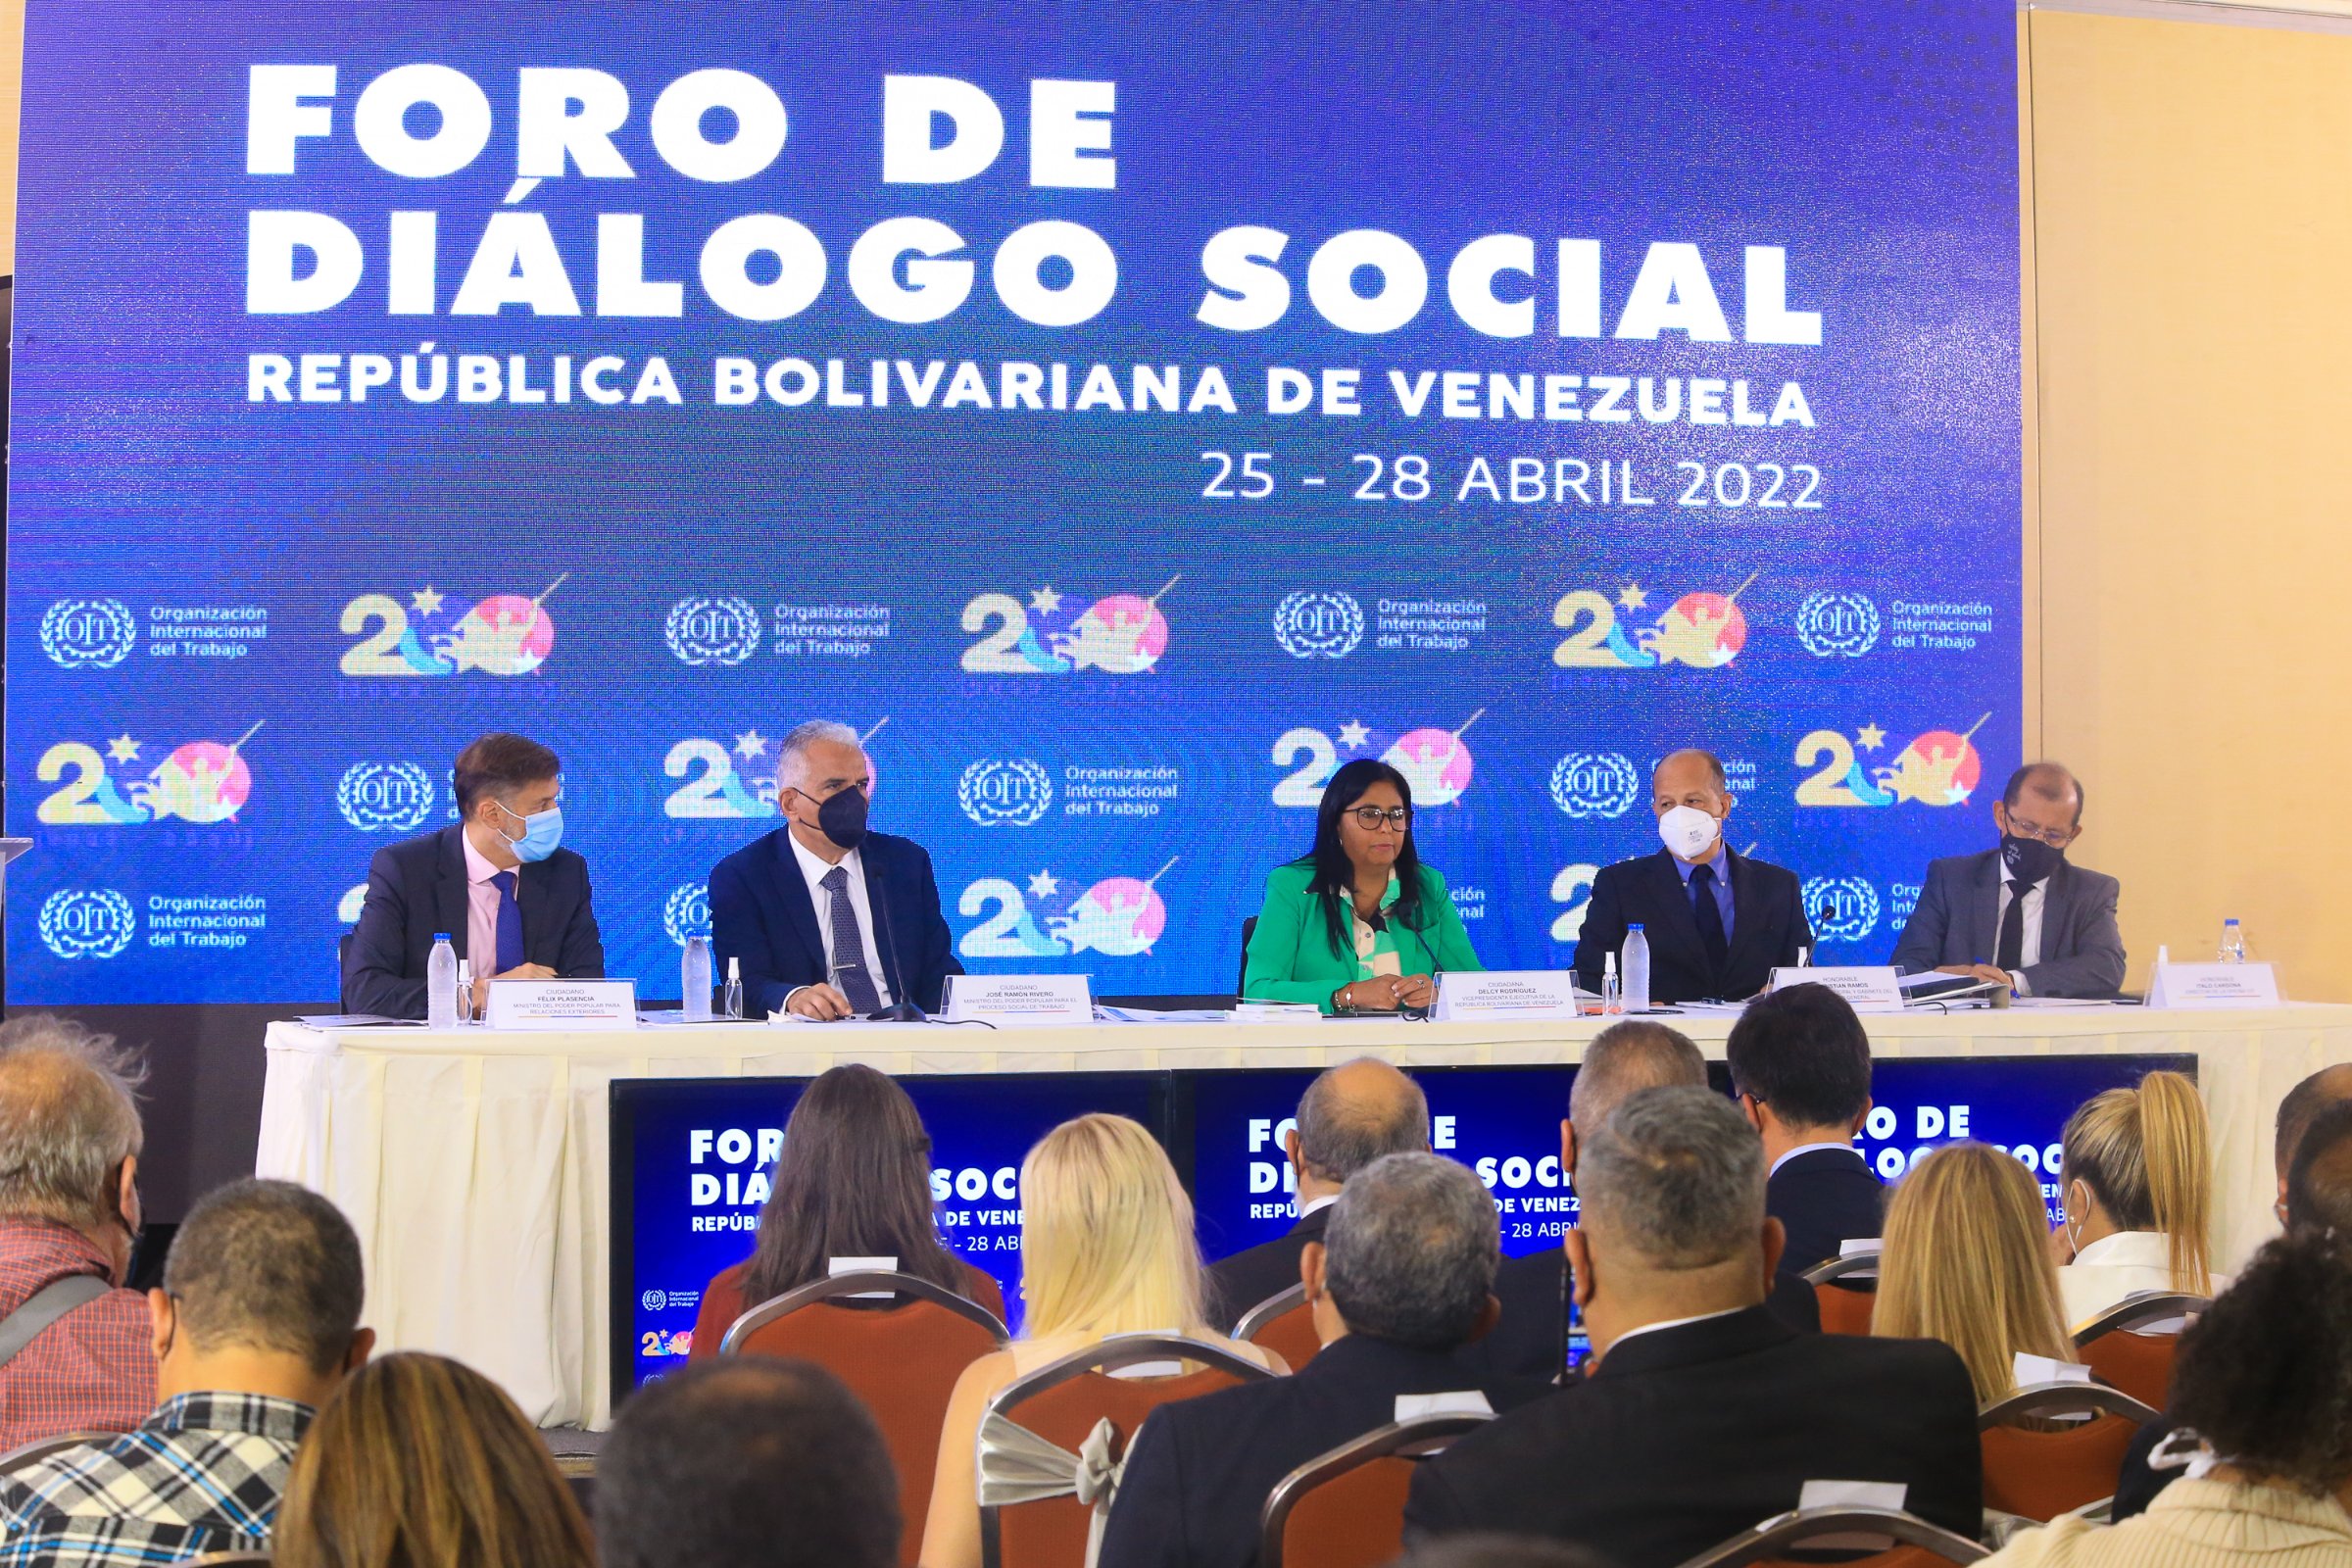 Foro de Diálogo Social tripartito - noticiacn